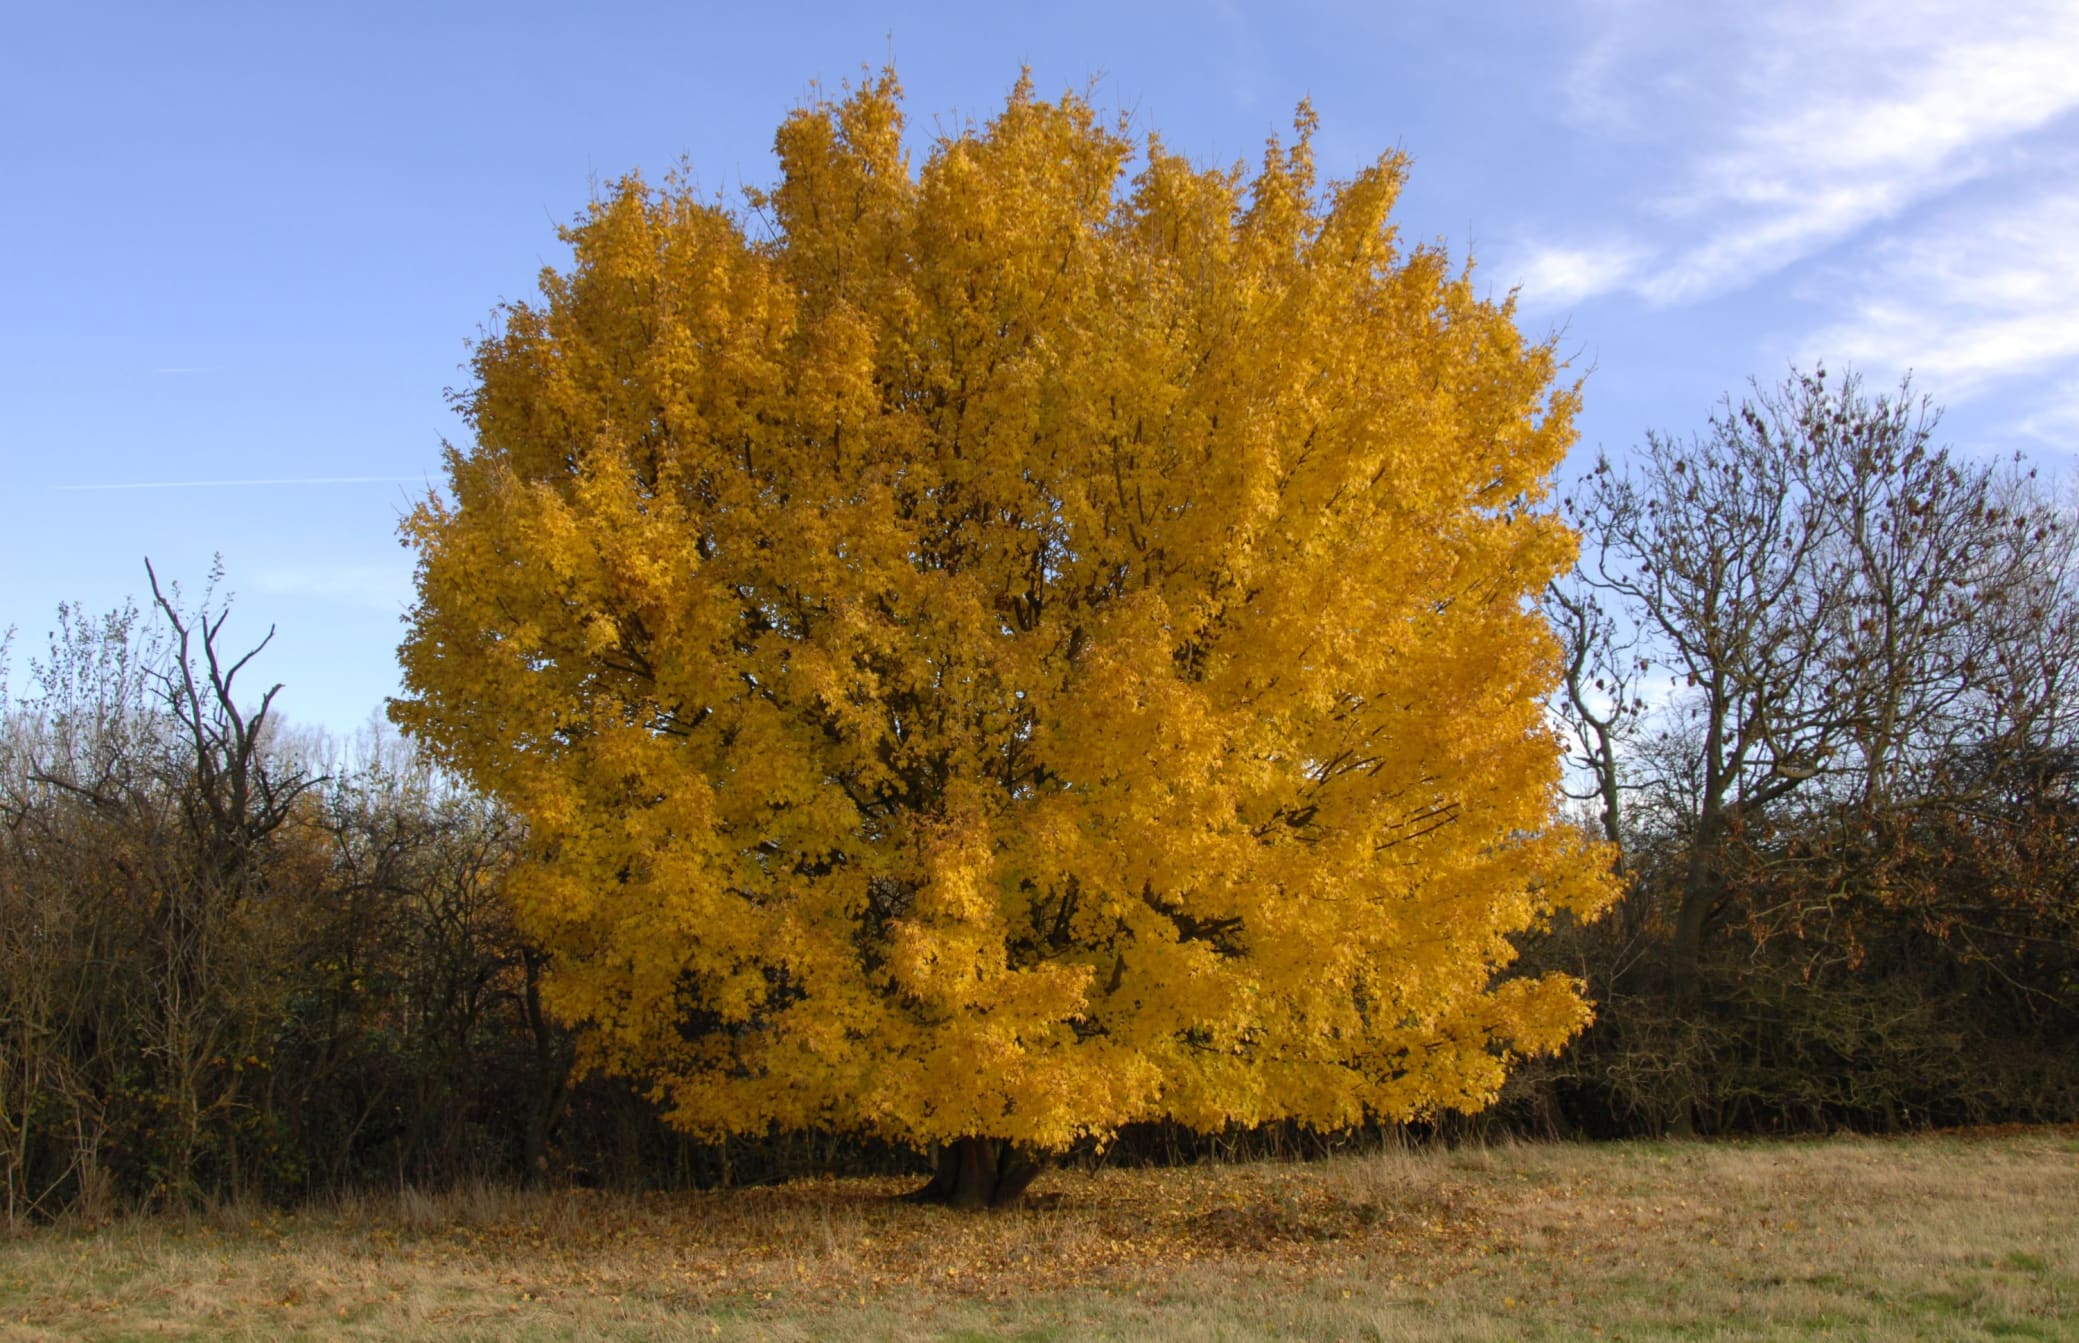 Field maple in autumn